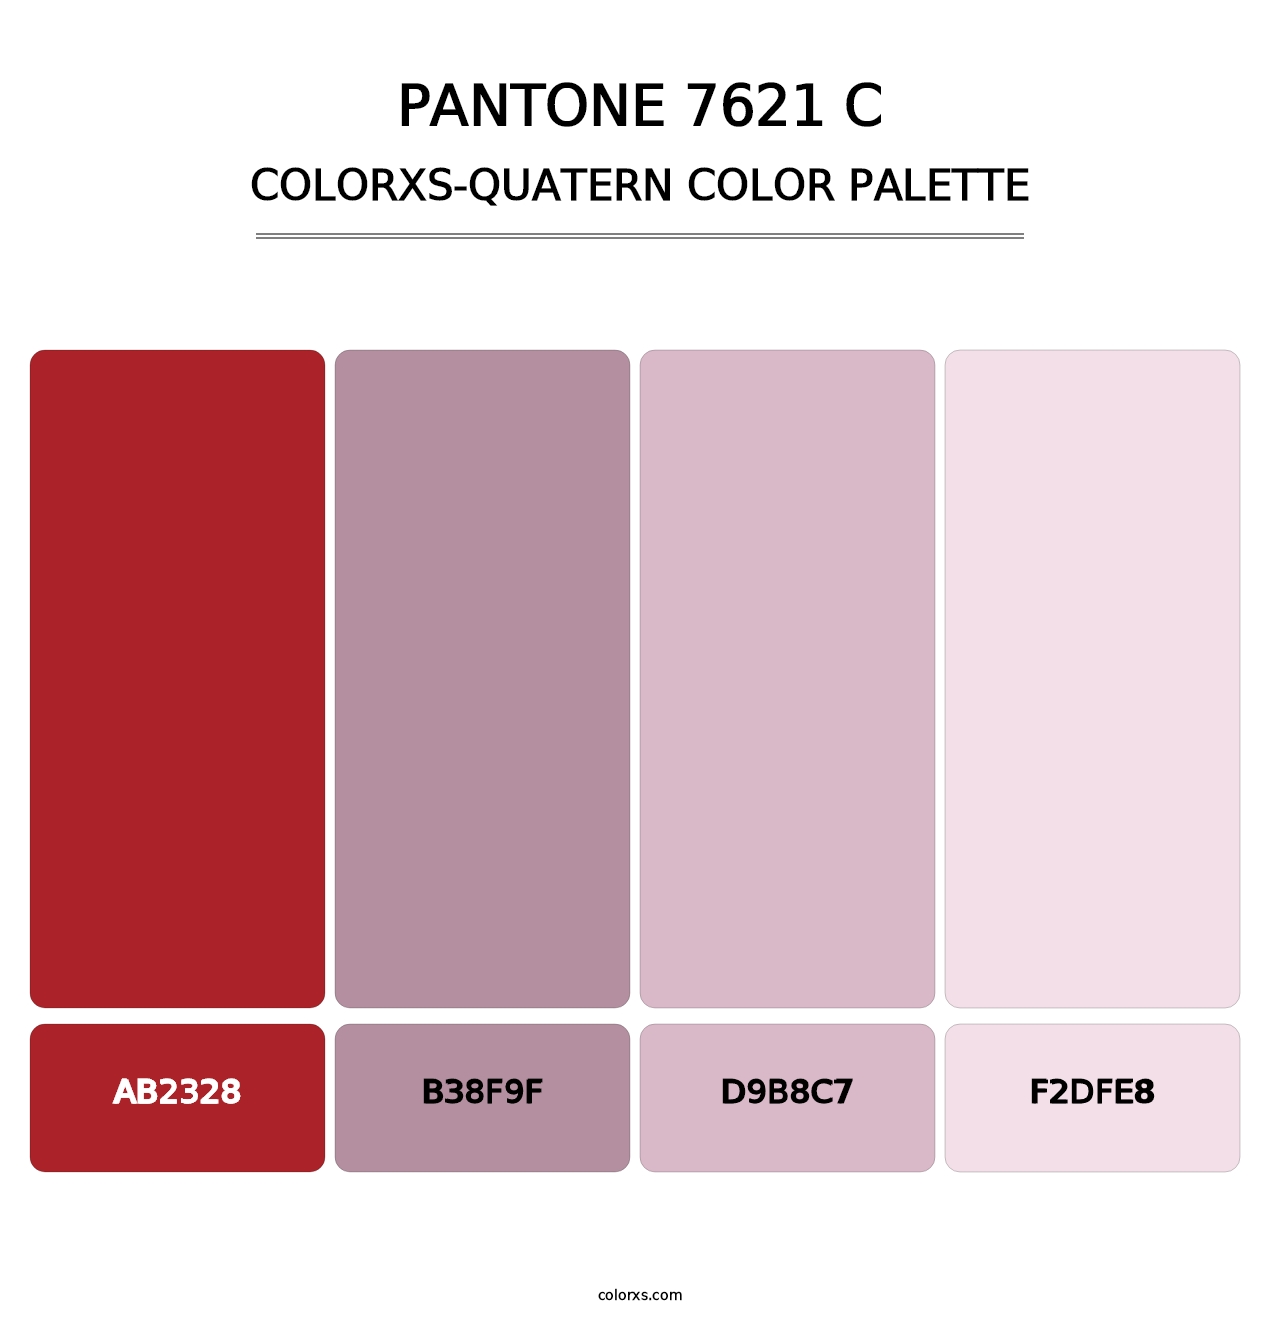 PANTONE 7621 C - Colorxs Quatern Palette